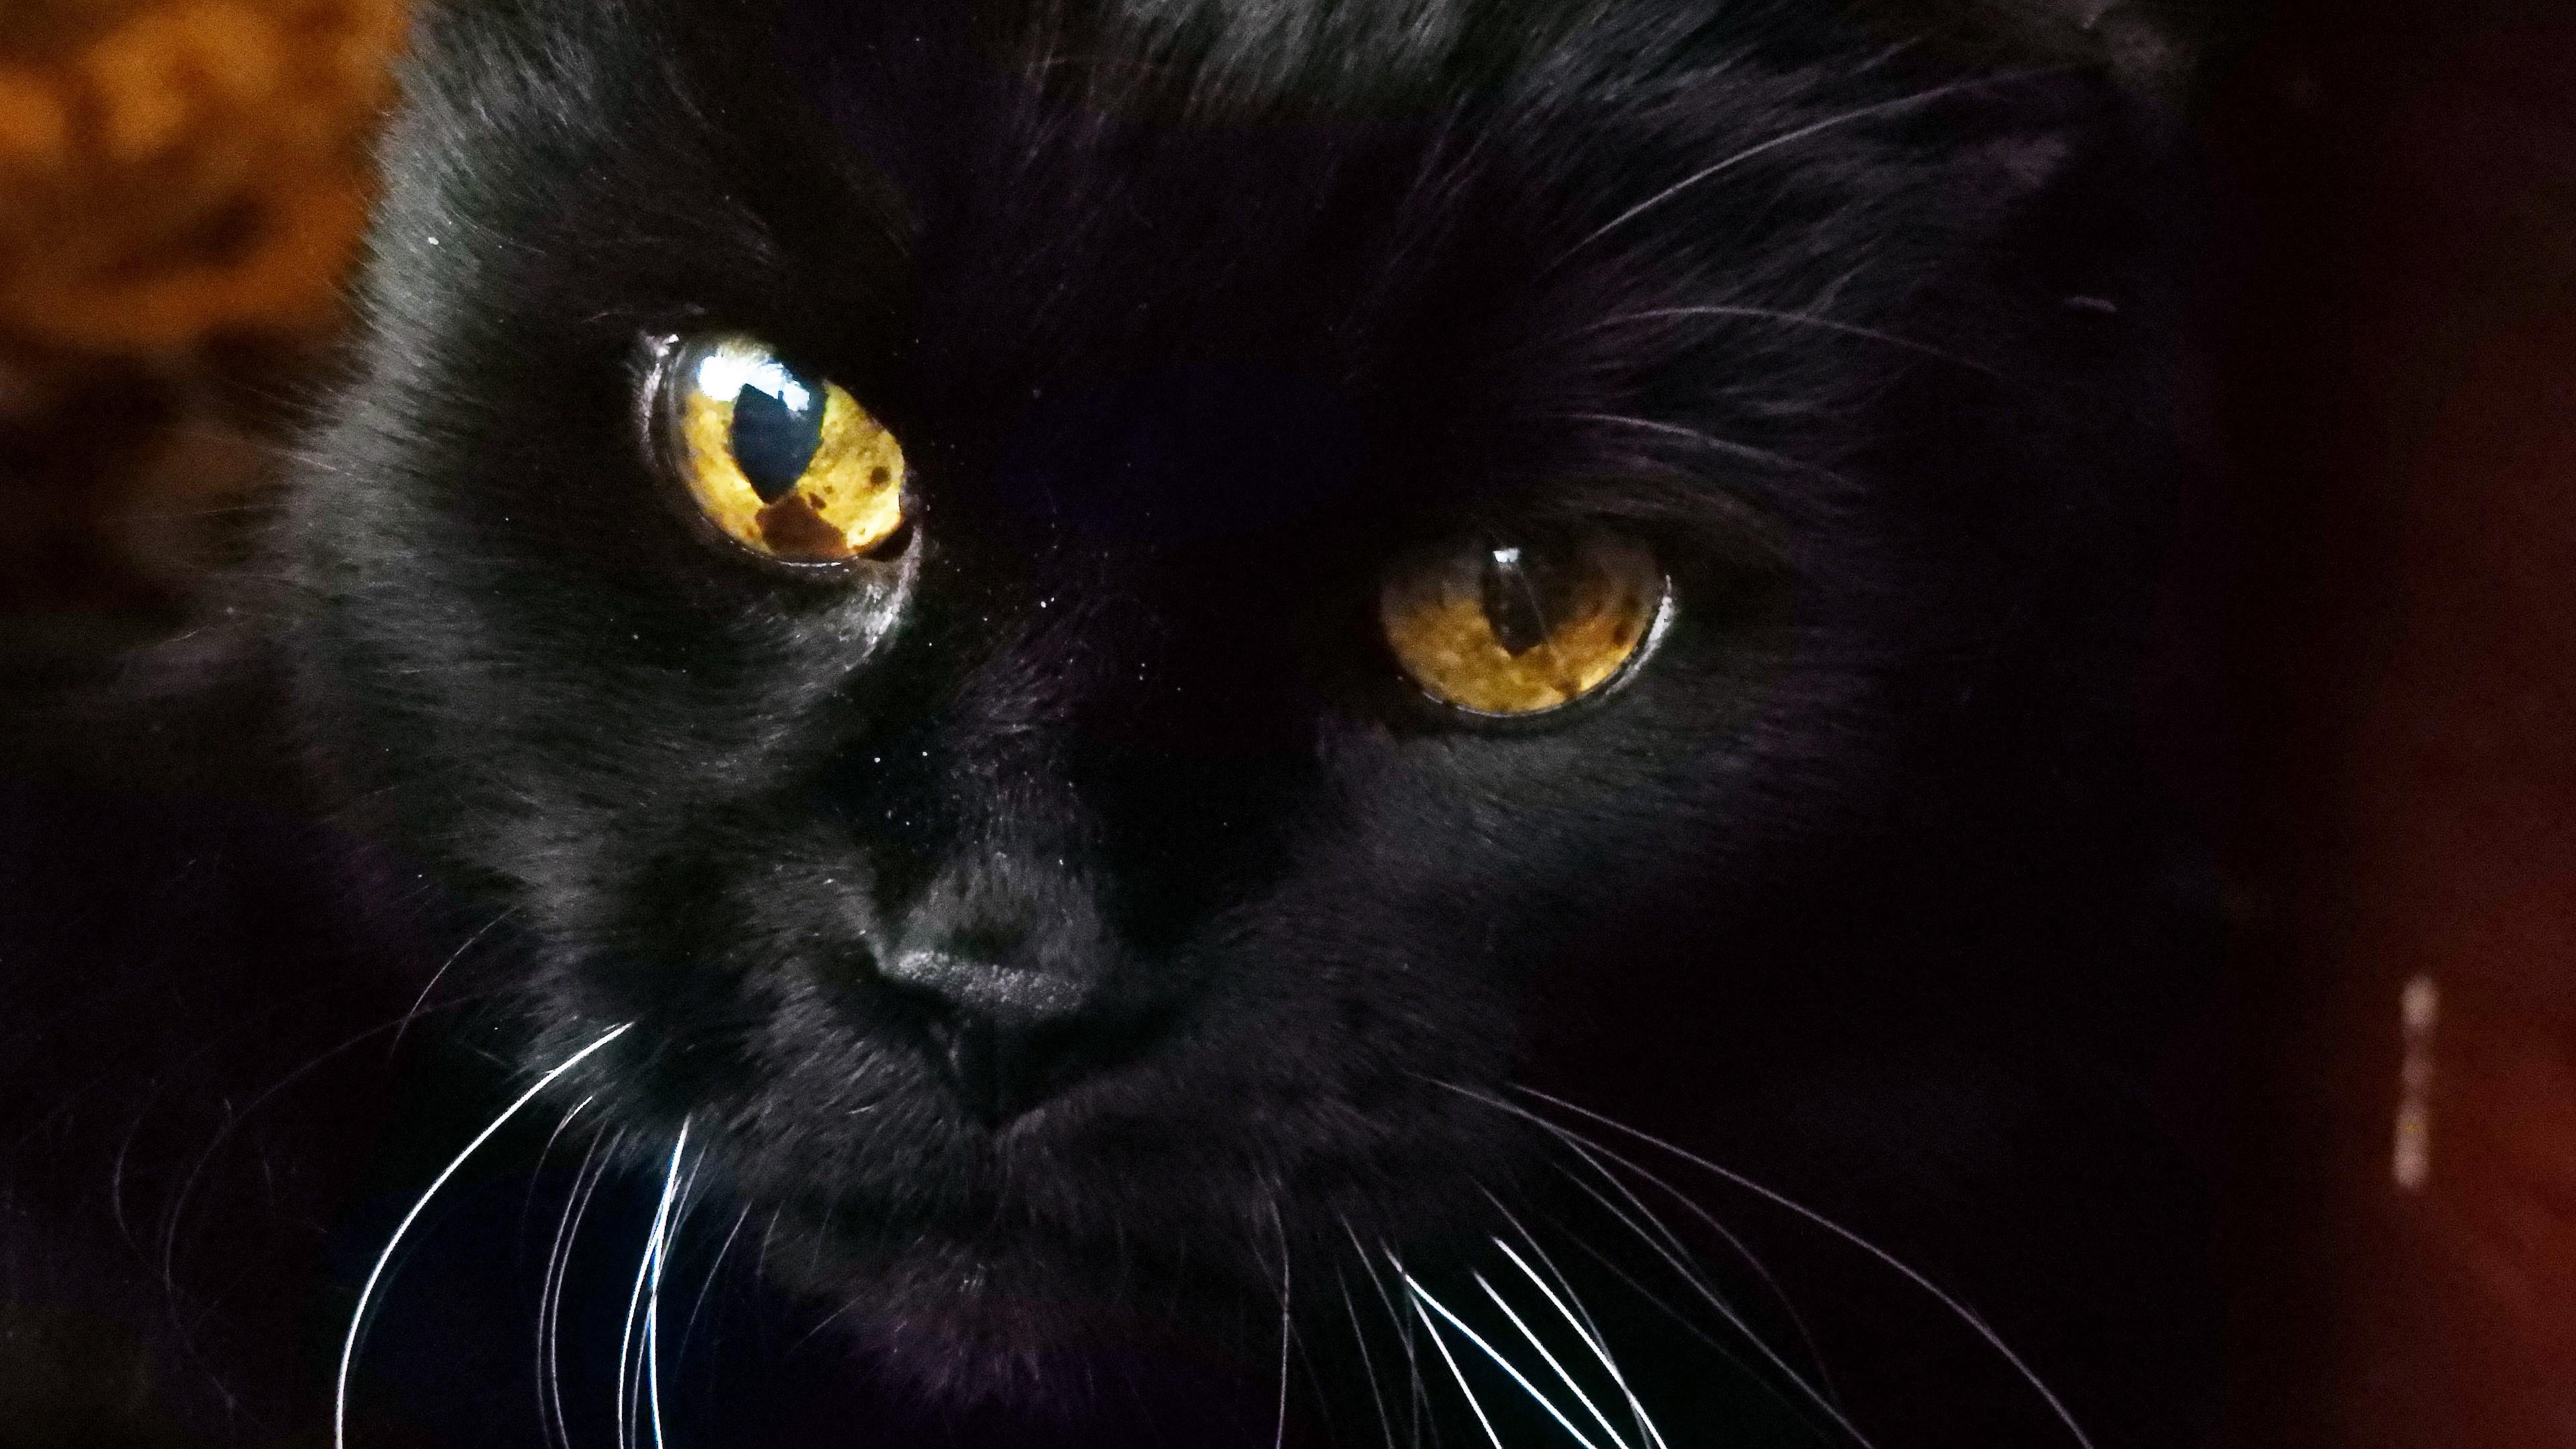  Black  cat  face 4K  UltraHD wallpaper  backiee